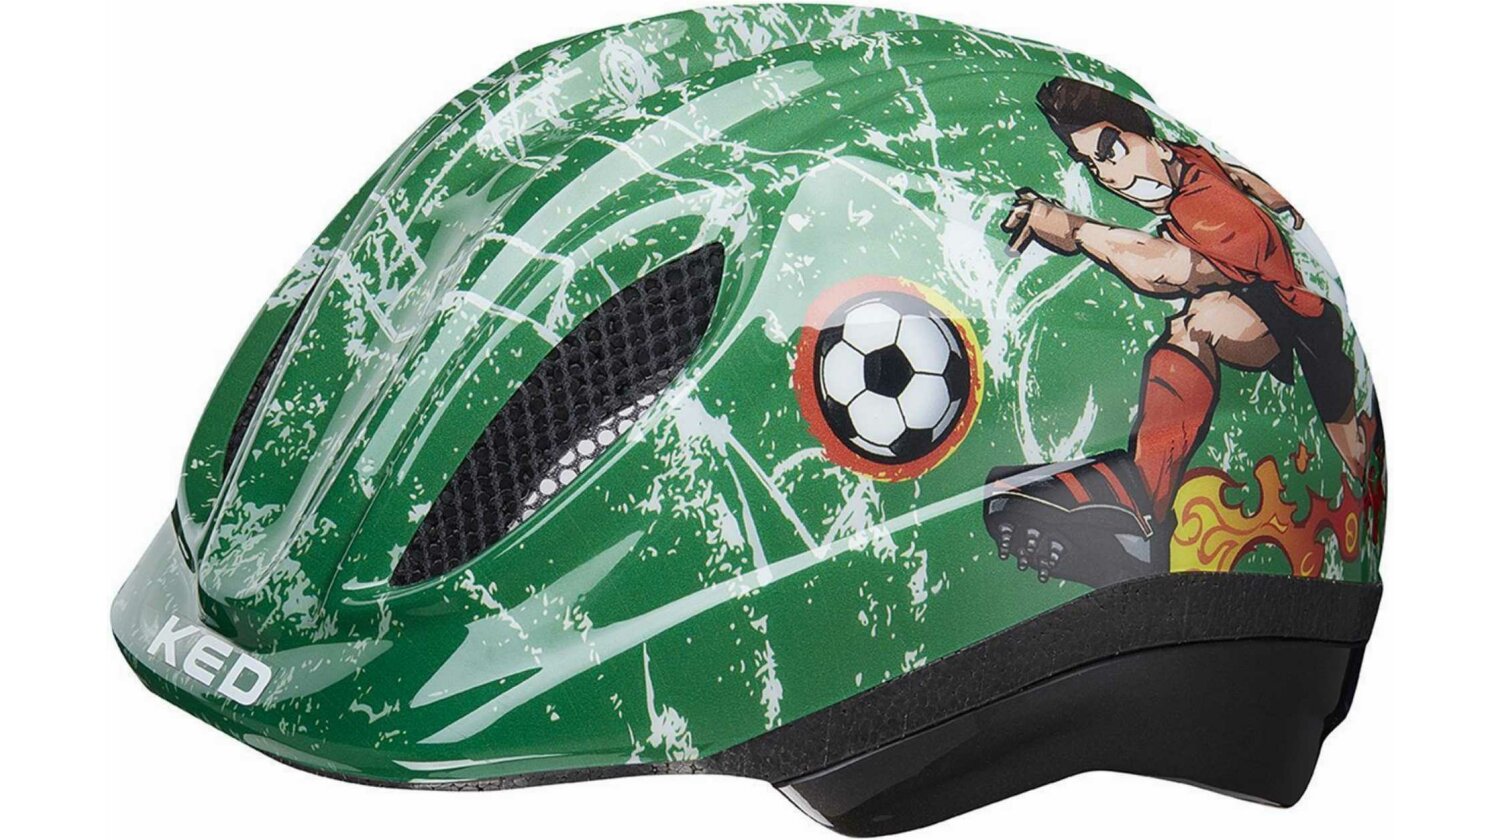 KED Meggy Trend Helm soccer